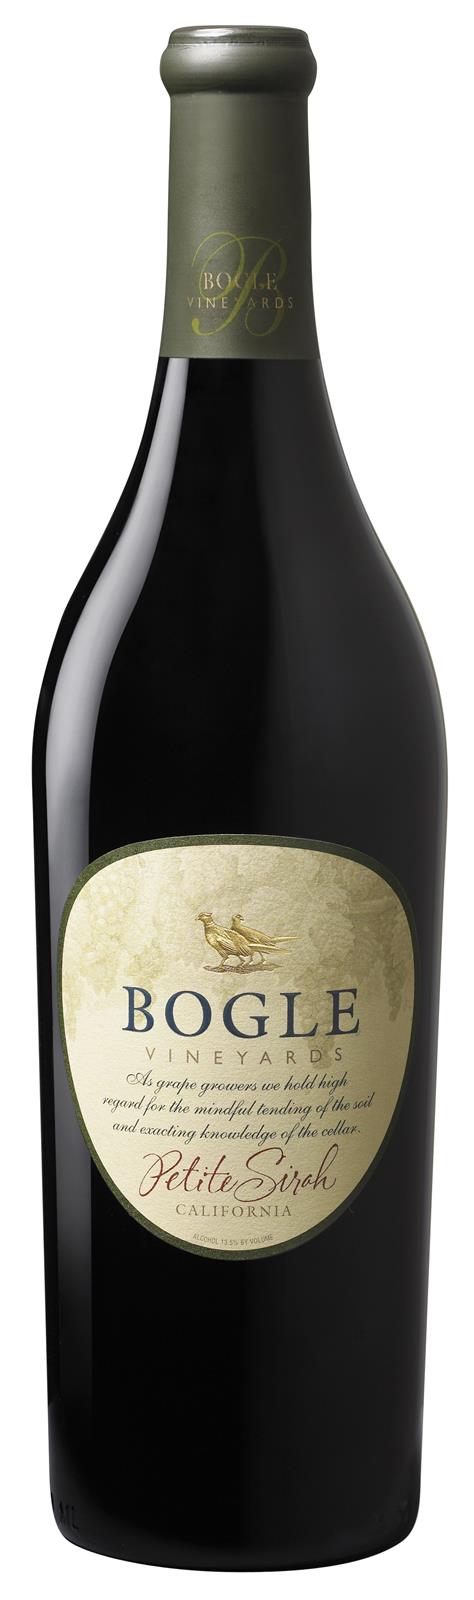 Bogle Vineyards 'Heritage' Petite Sirah 2017 (California)